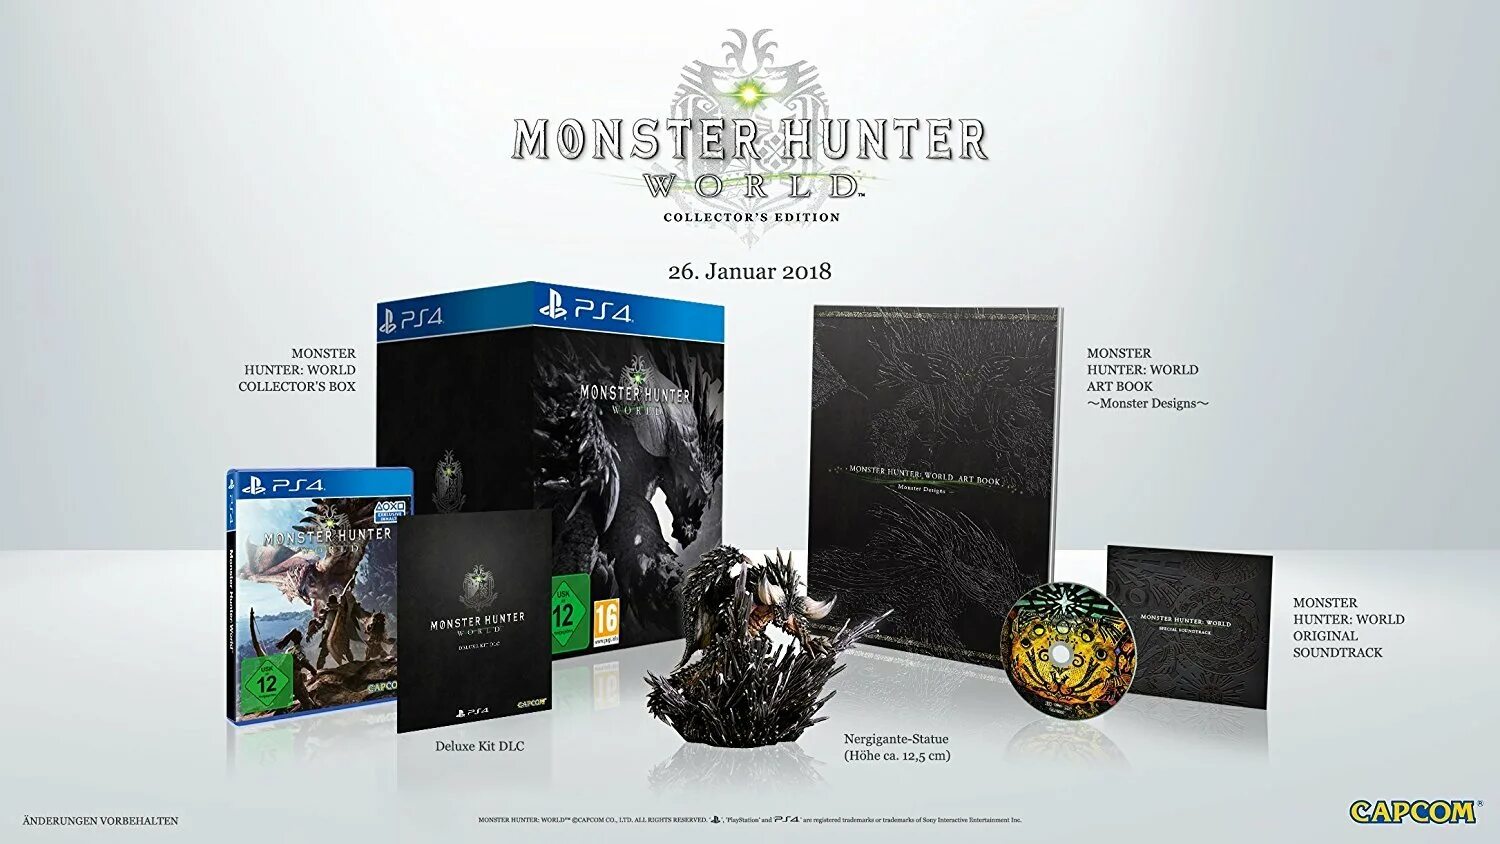 Montana collection edition. Monster Hunter Collector's Edition. Монстр Хантер Делюкс. Monster Hunter World isborn коллекционное издание. Иксбокс монстр.